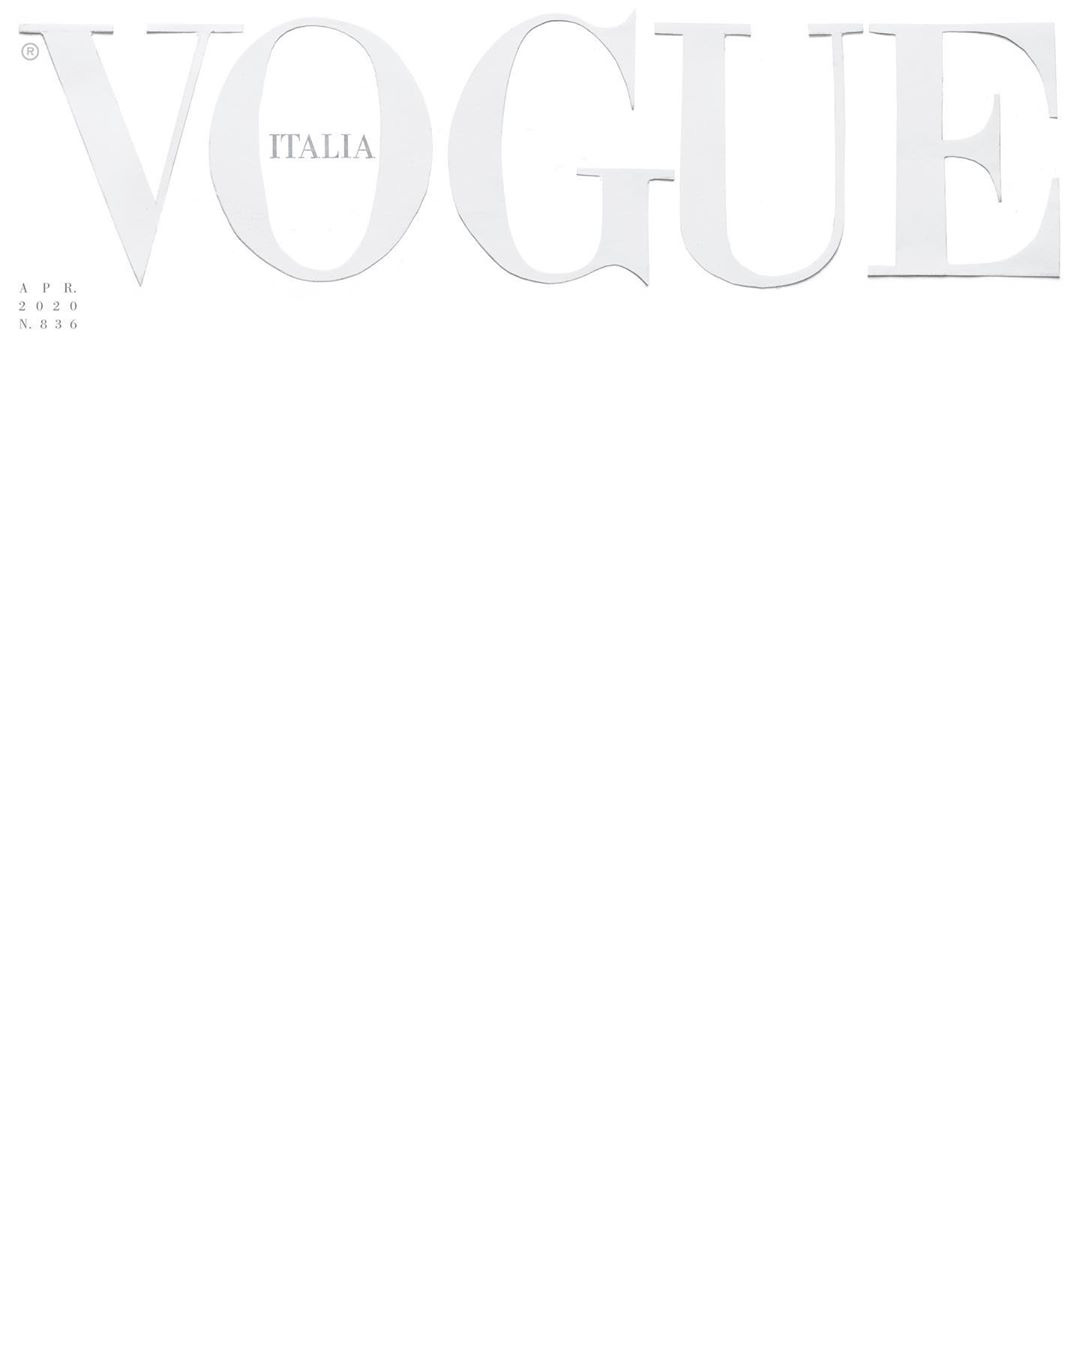 Tạp chí Vogue Ý: Hãy nhấp chuột vào hình ảnh liên quan và khám phá những bức ảnh tuyệt đẹp của Tạp chí Vogue Ý. Họ sẽ mang tới cho bạn những trang phục thời trang đầy màu sắc, kiểu dáng độc đáo và những bài phỏng vấn bắt mắt của các ngôi sao hàng đầu. Hãy cùng khám phá xem tại sao Vogue là tạp chí thời trang đẳng cấp nhất thế giới.